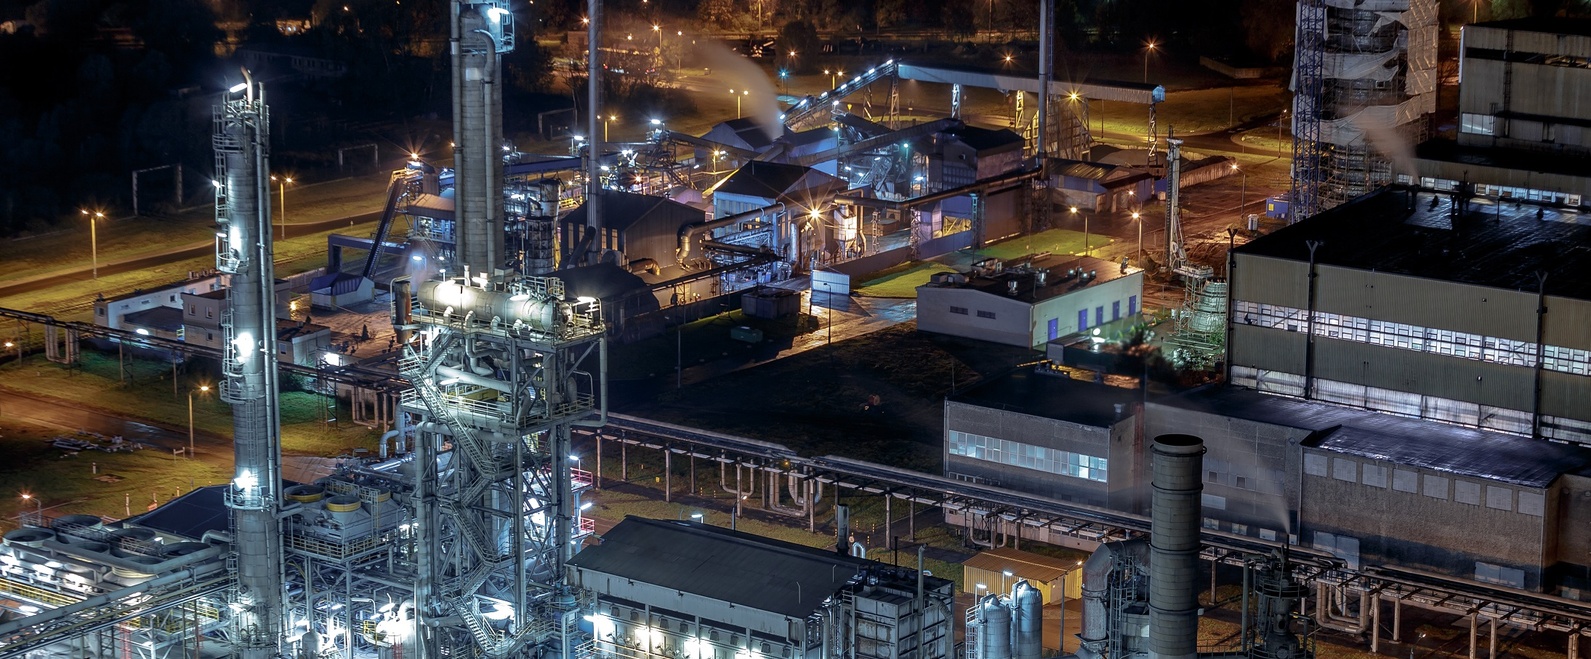 Grupa Azoty Zakłady Chemiczne „Police” S.A. uzyskała pomoc w ramach programu rządowego pod nazwą: „Pomoc dla przemysłu energochłonnego związana z cenami gazu ziemnego i energii elektrycznej w 2023 r.”.